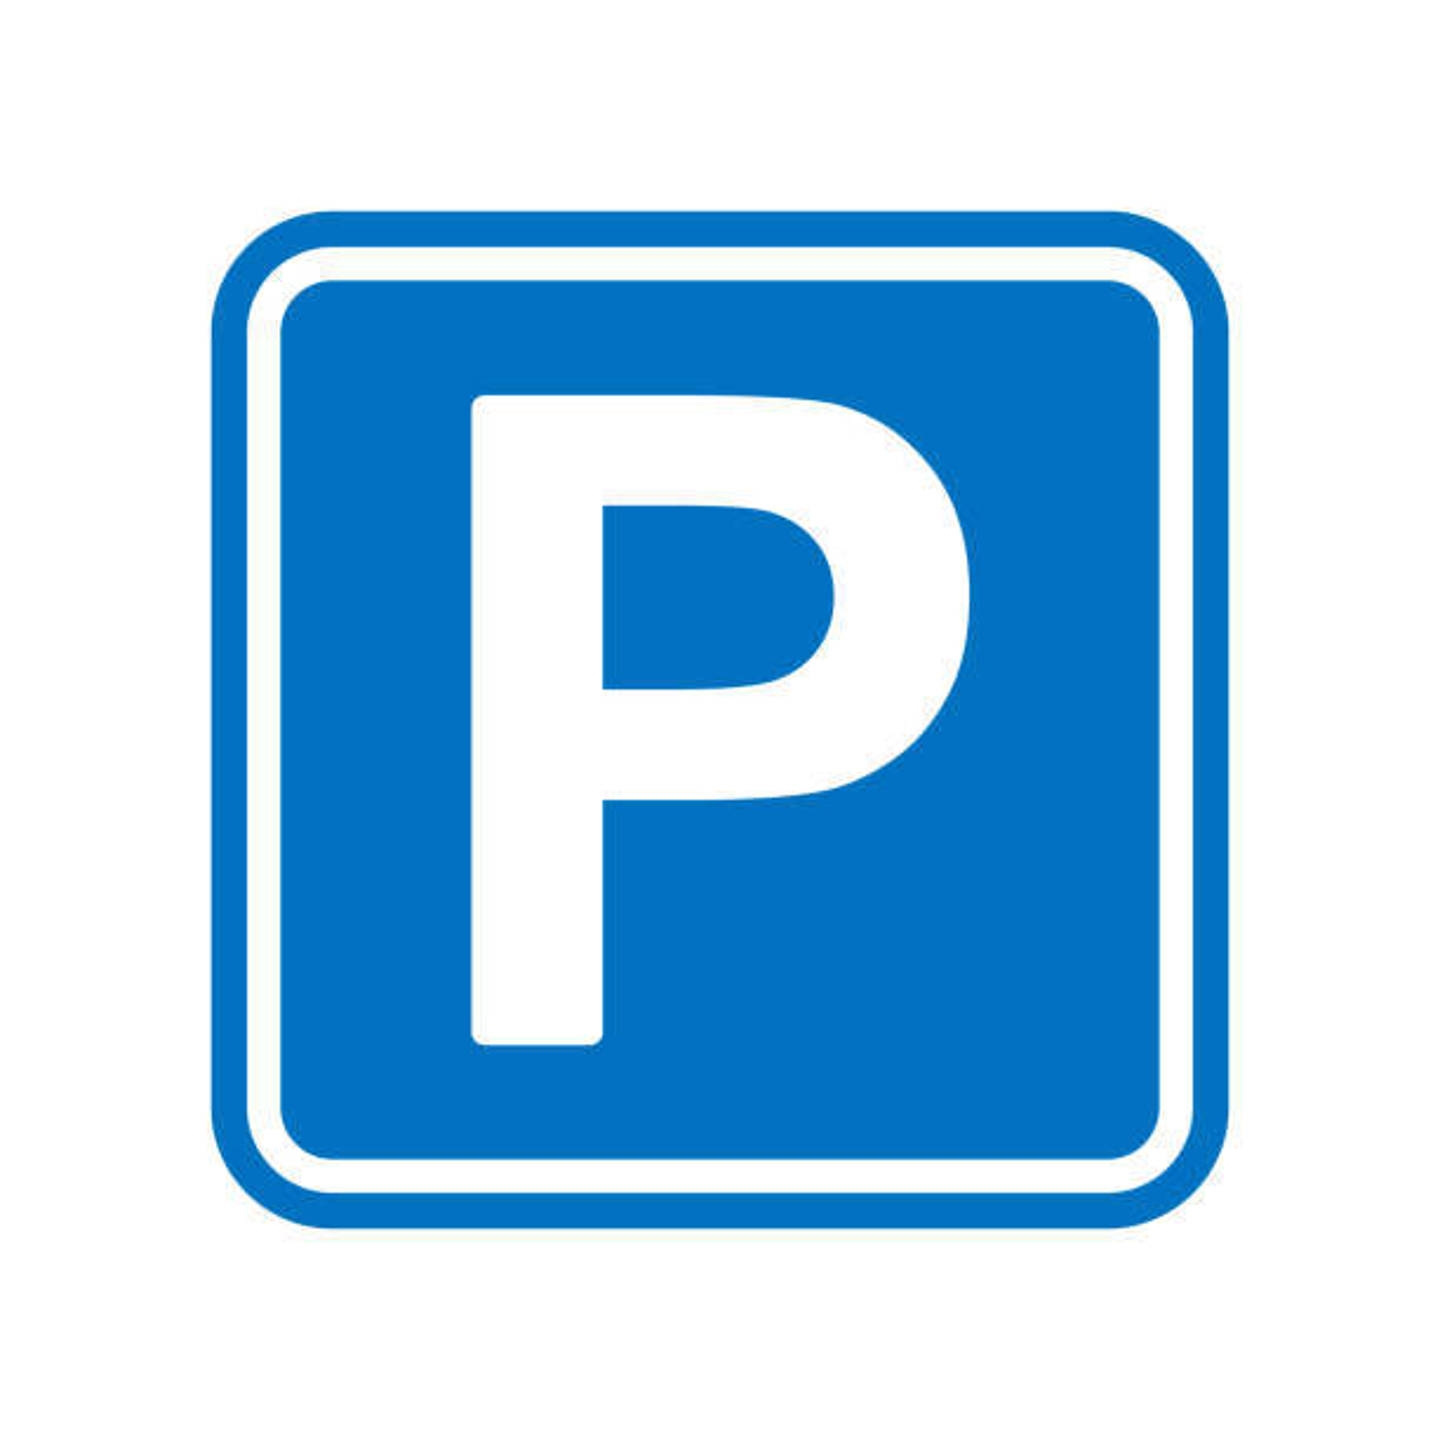 Parking à vendre à Molenbeek-Saint-Jean 1080 77250.00€  chambres 12.50m² - annonce 1324620